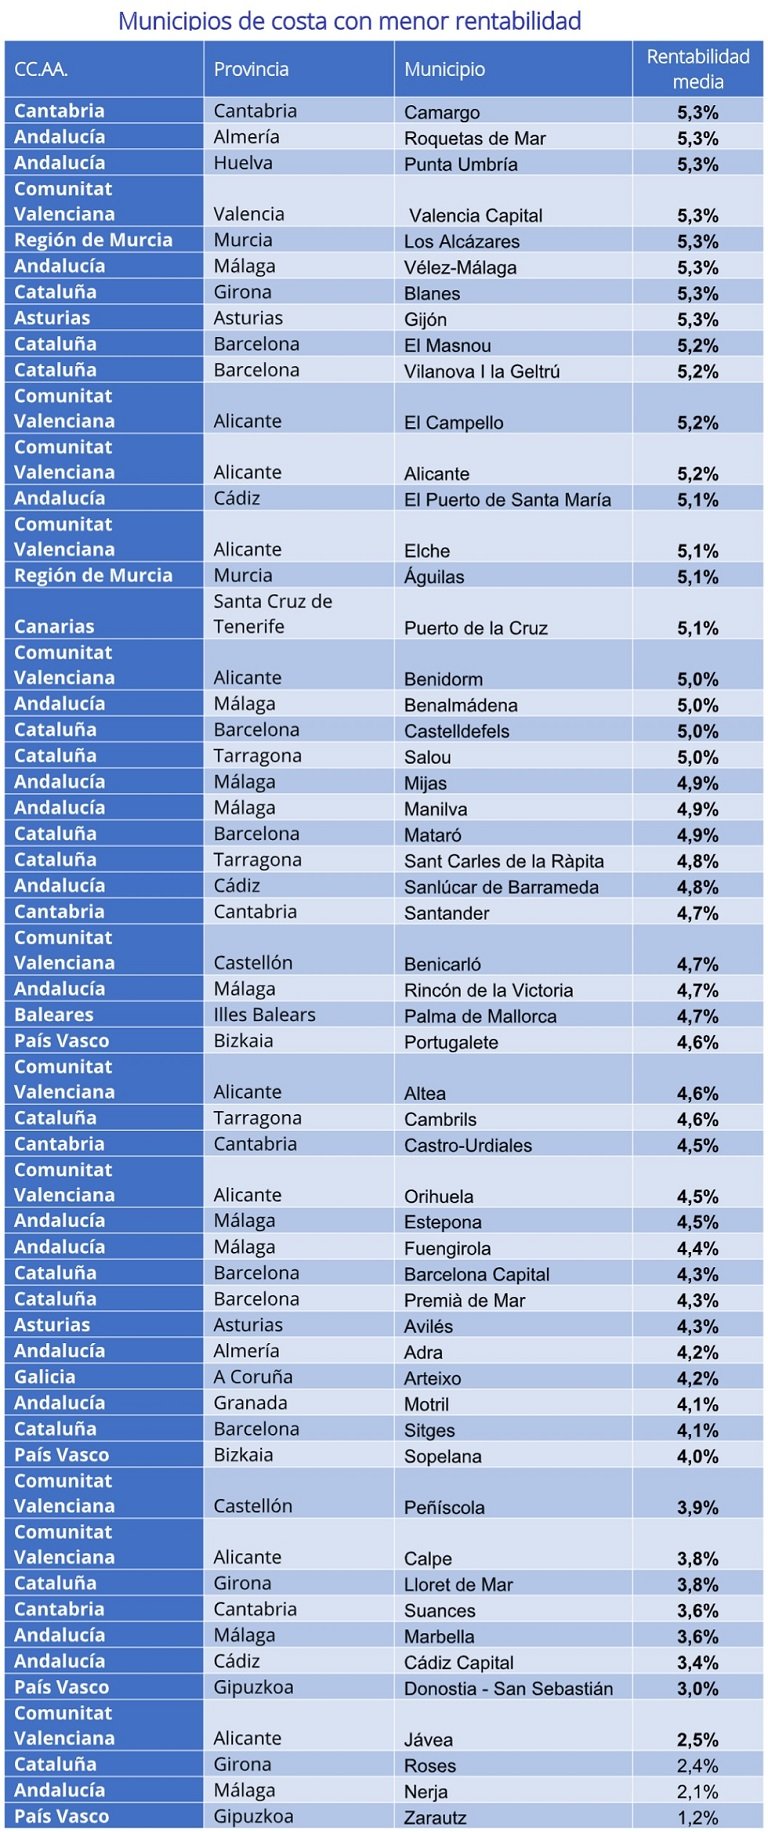 Fotocasa analiza los municipios costeros con mayor rentabilidad